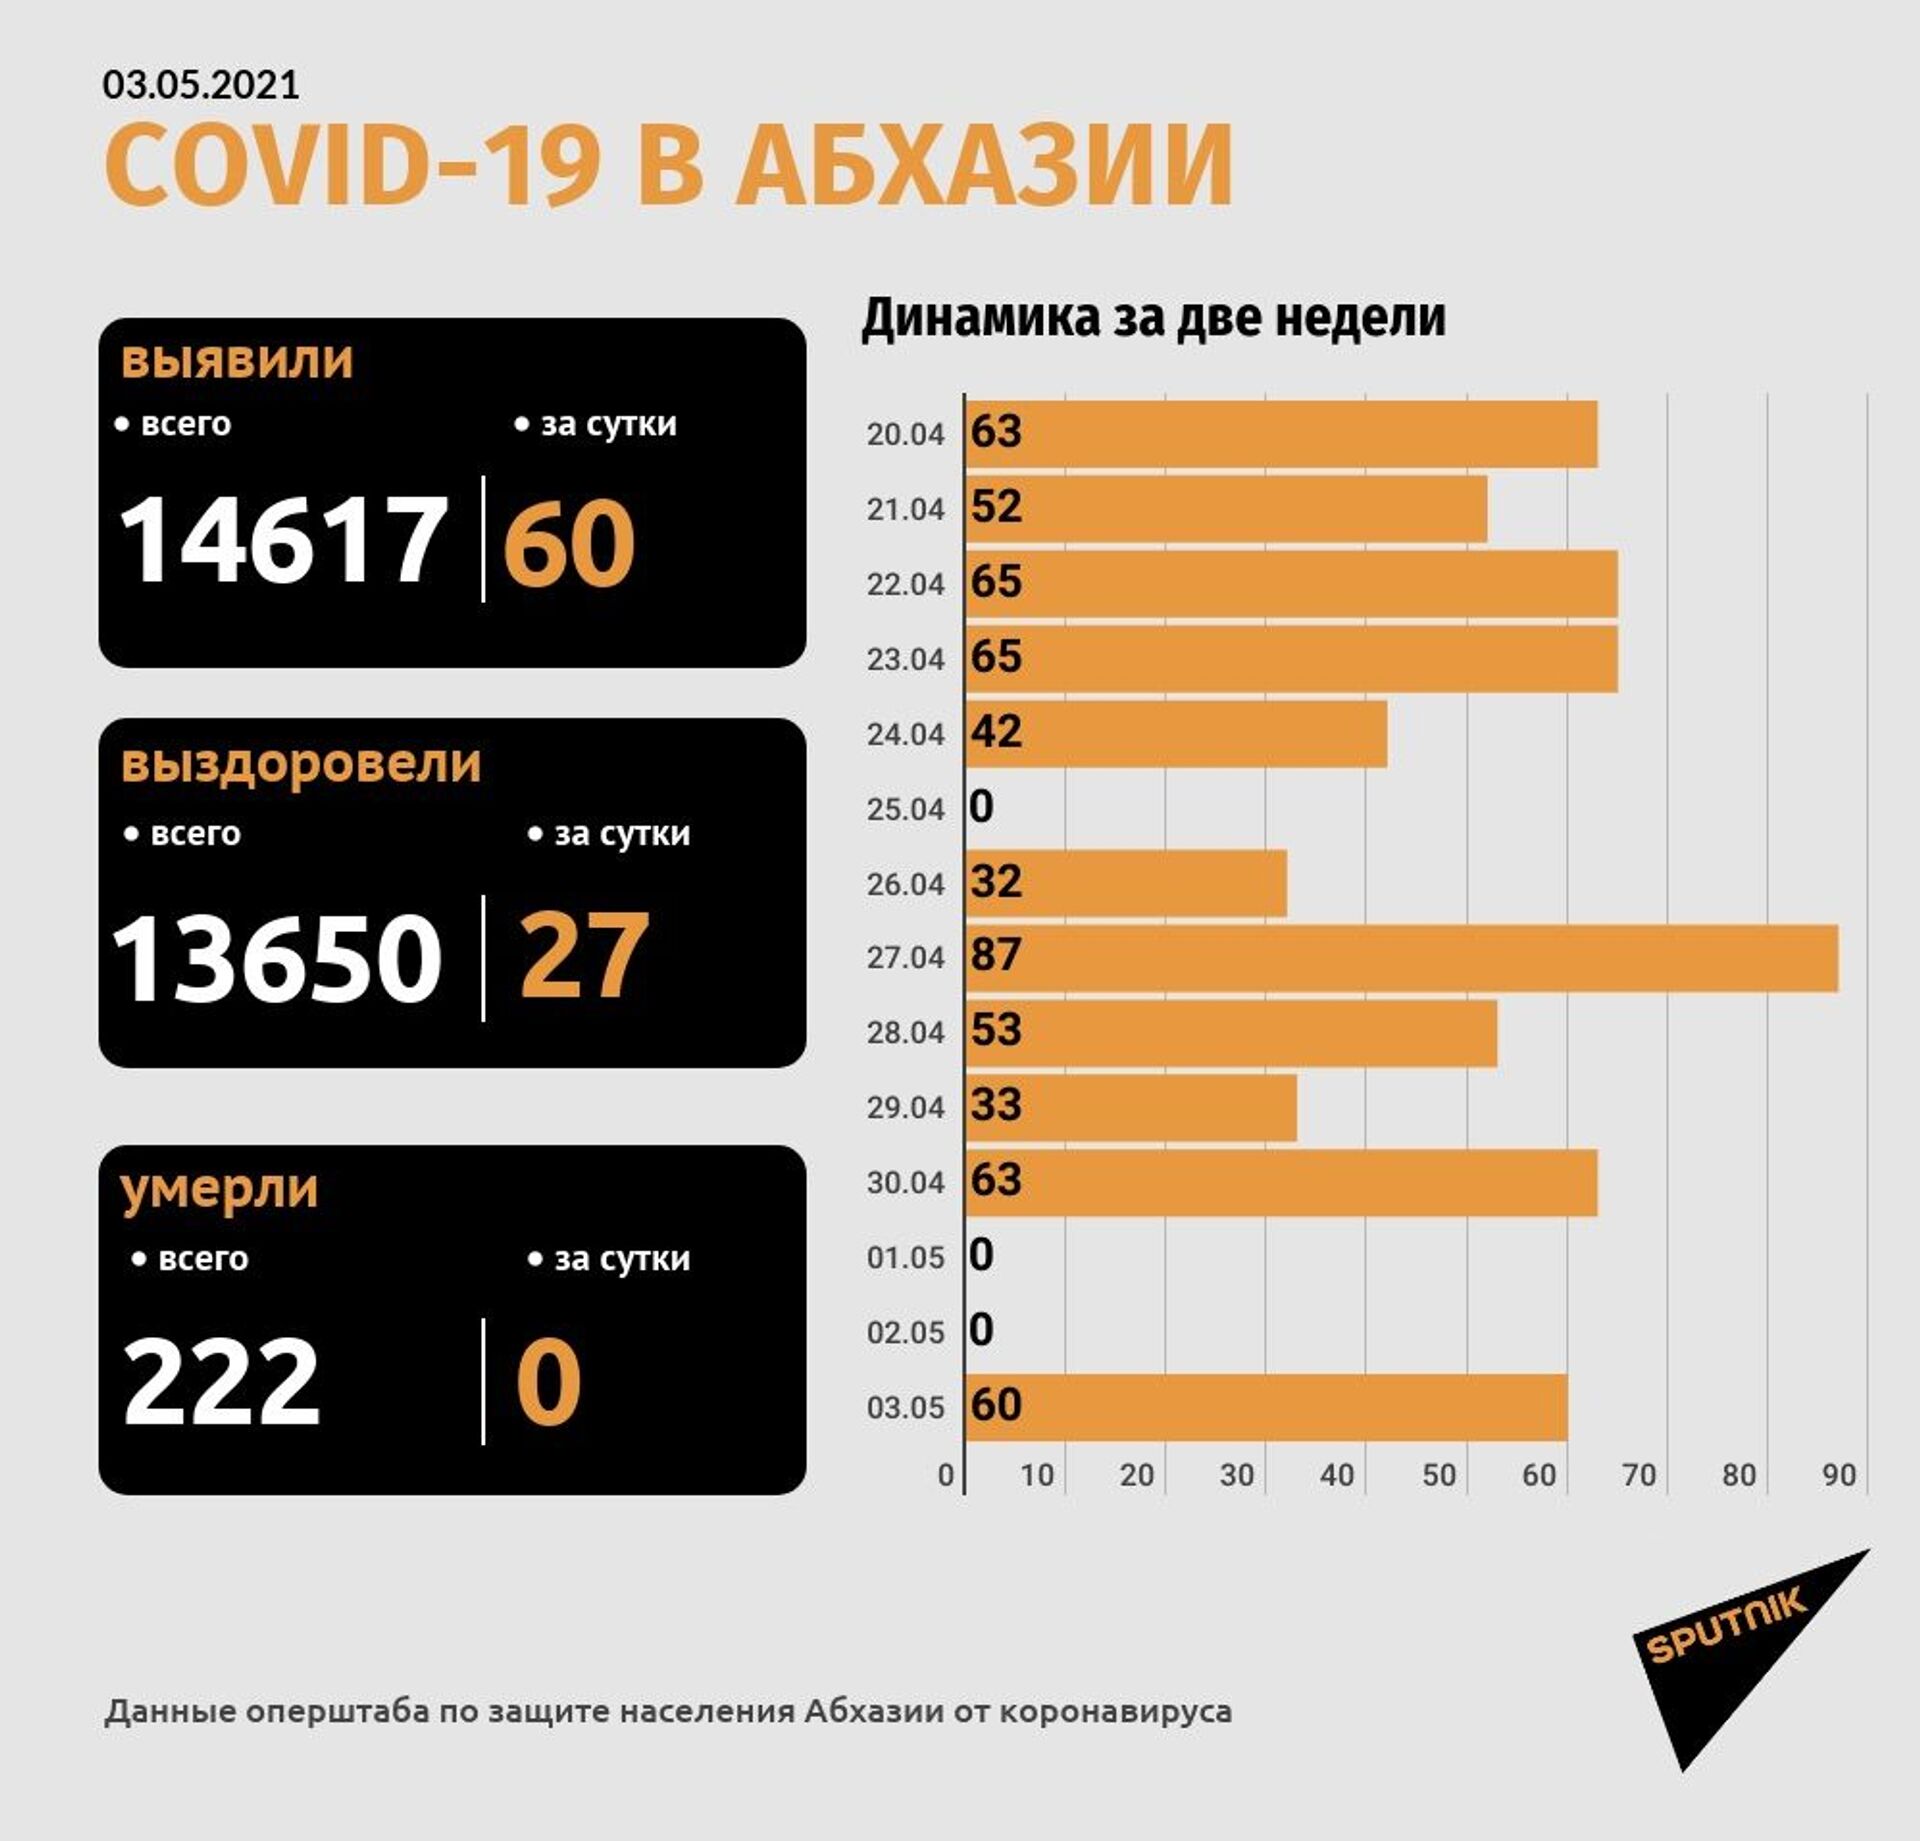 В Абхазии выявлено 60 новых случаев заражения коронавирусом - Sputnik Абхазия, 1920, 03.05.2021